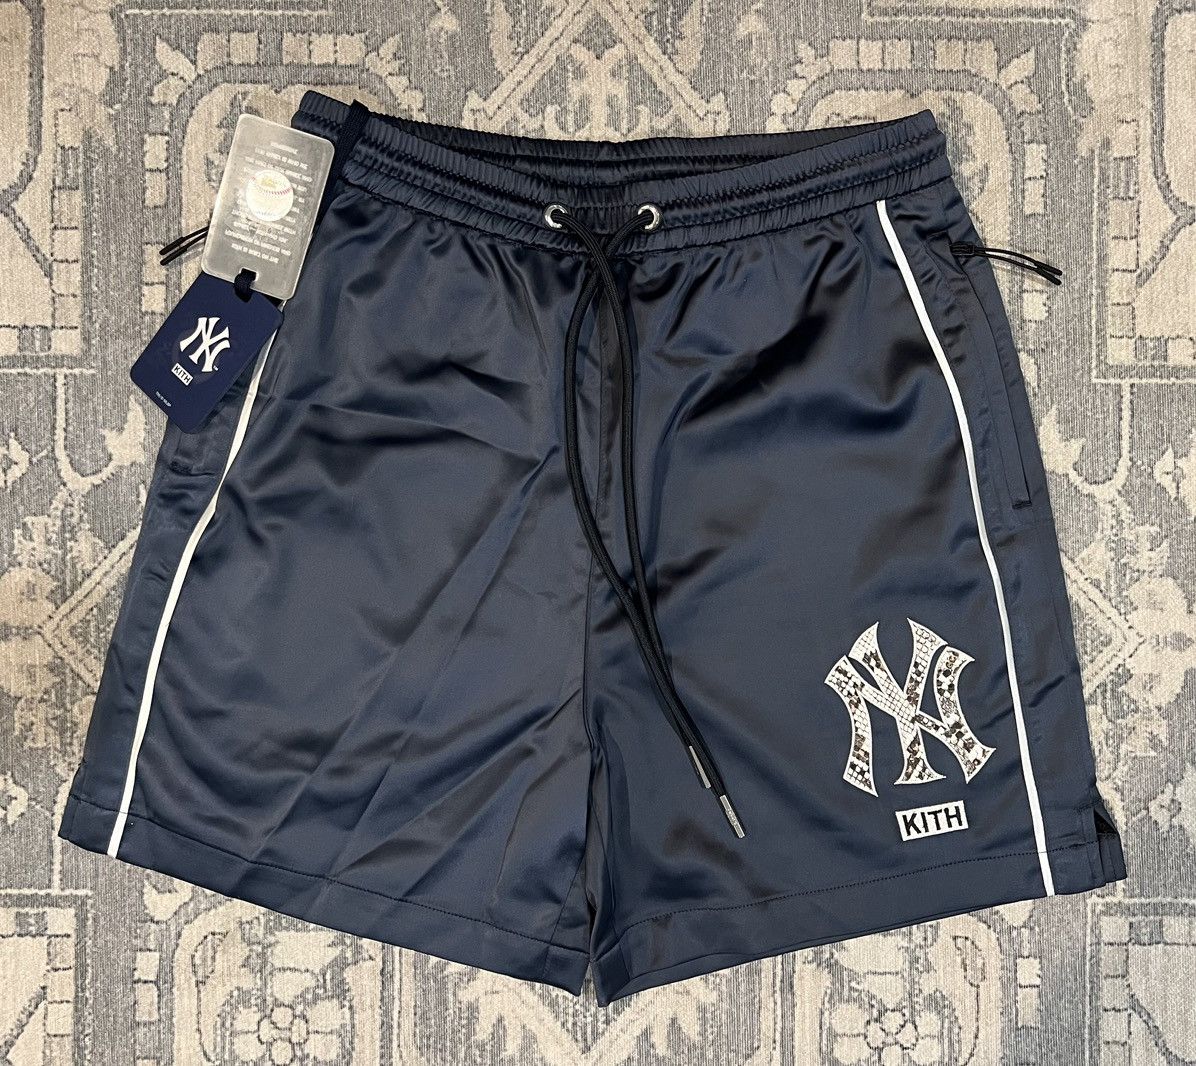 Kith Kith x MLB NY shorts | Grailed